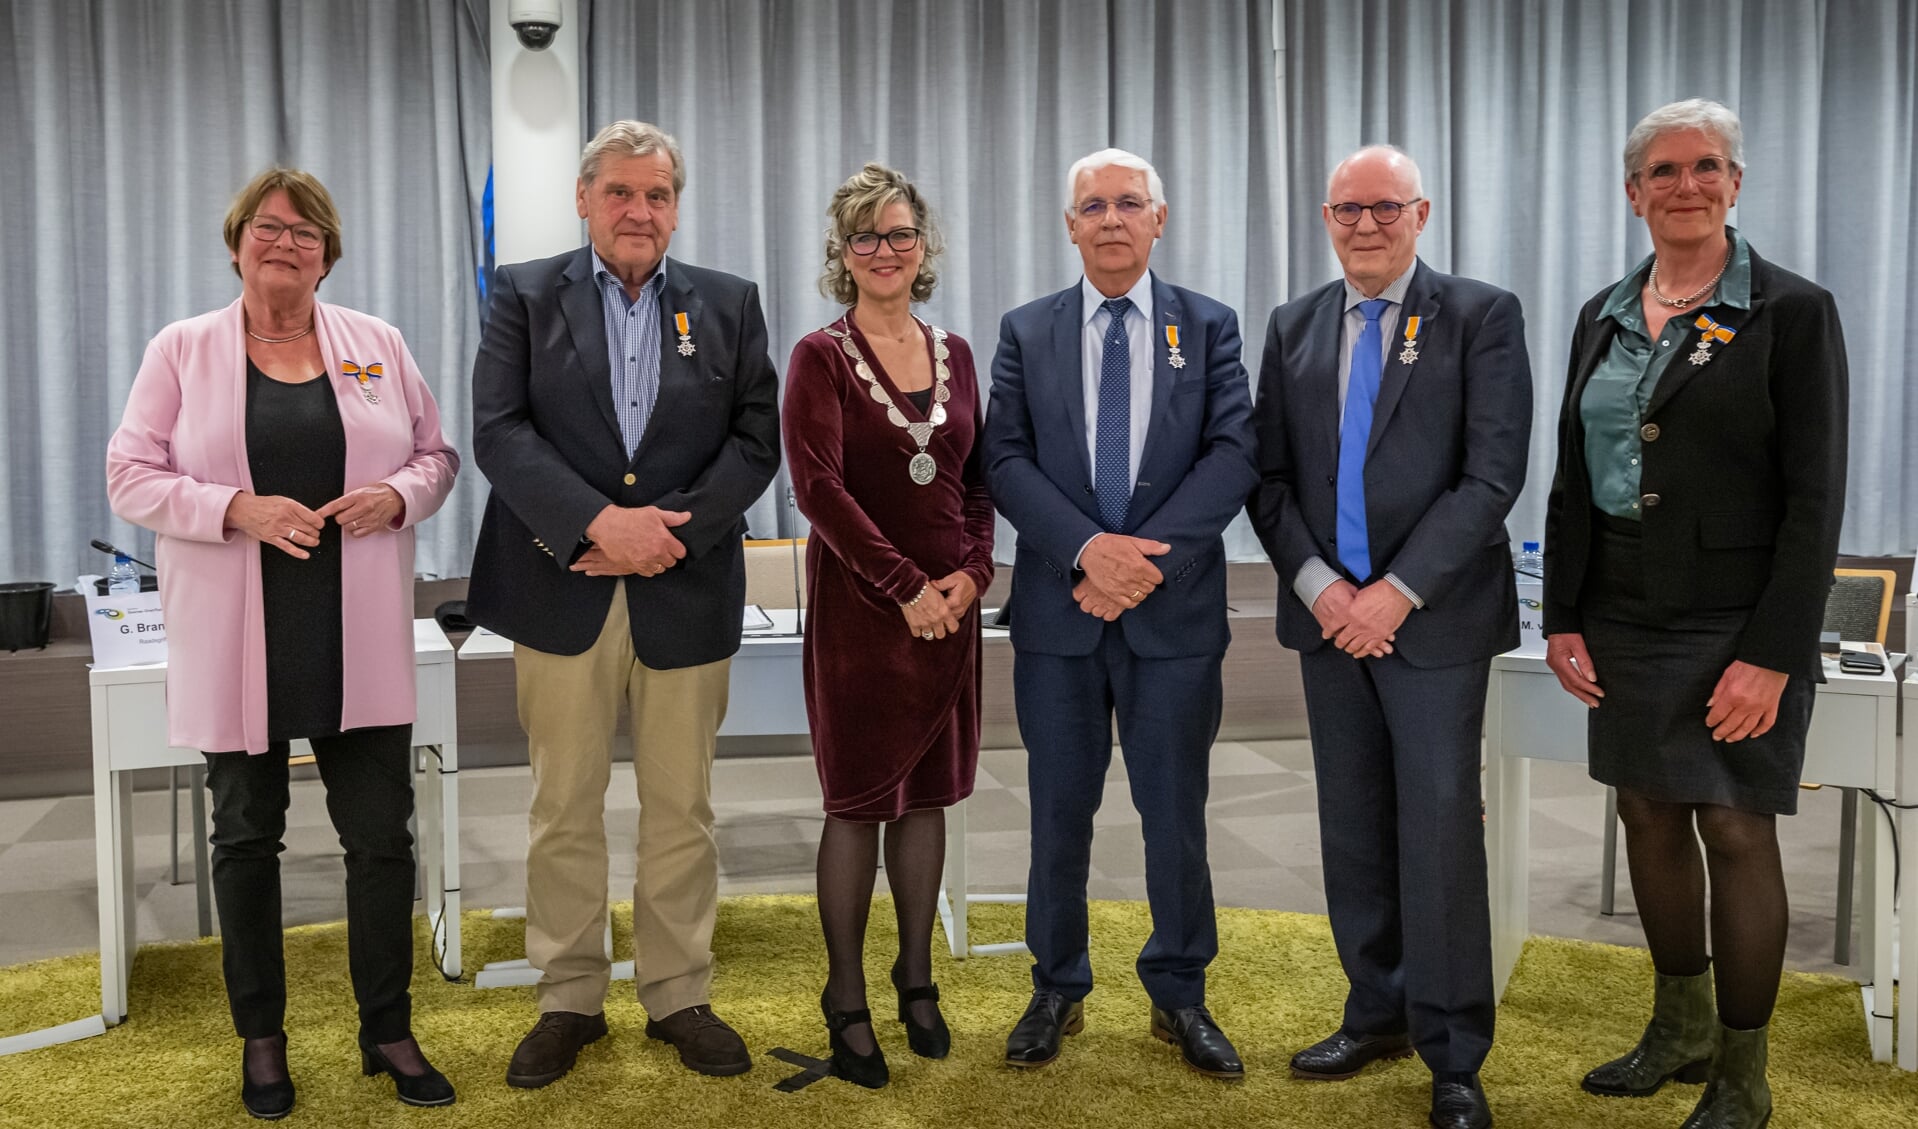 V.l.n.r. Addy Rijerkerk-Andriesen, Henk van der Meer, burgemeester Grootenboer, Rien van der Boom, Conny Pipping en Rita van den Nieuwendijk-Groenendijk (Foto: Wim van Vossen).